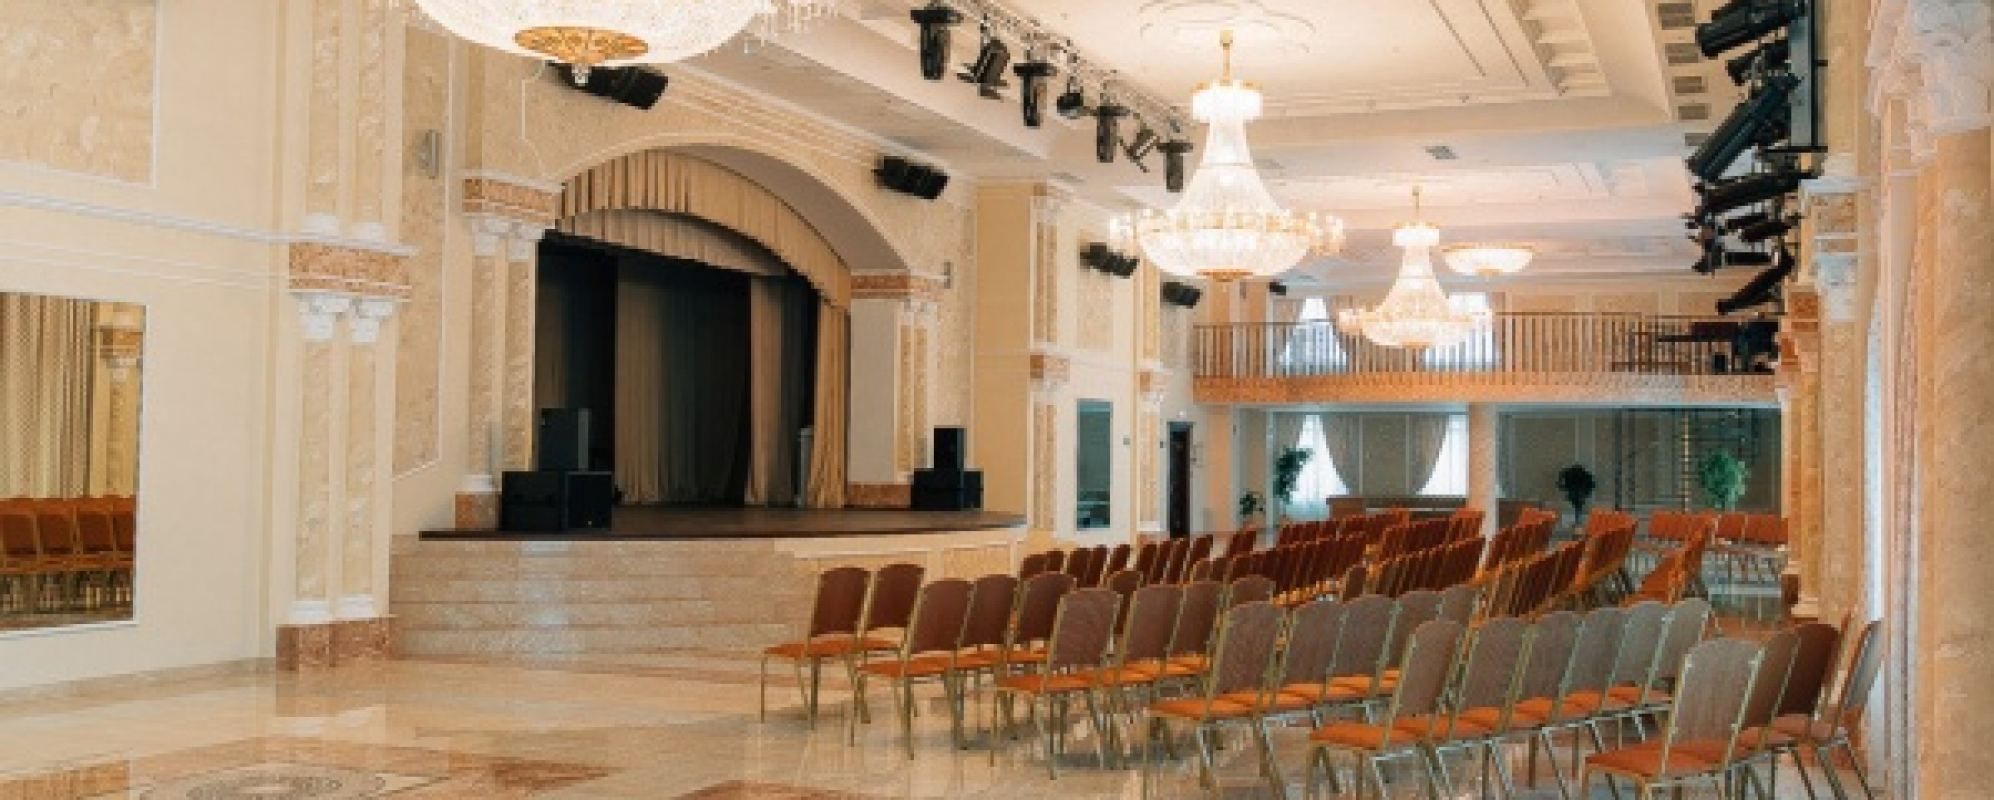 Фотографии концертного зала Мраморный зал Дворца культуры Нефтяник им. В.И. Муравленко